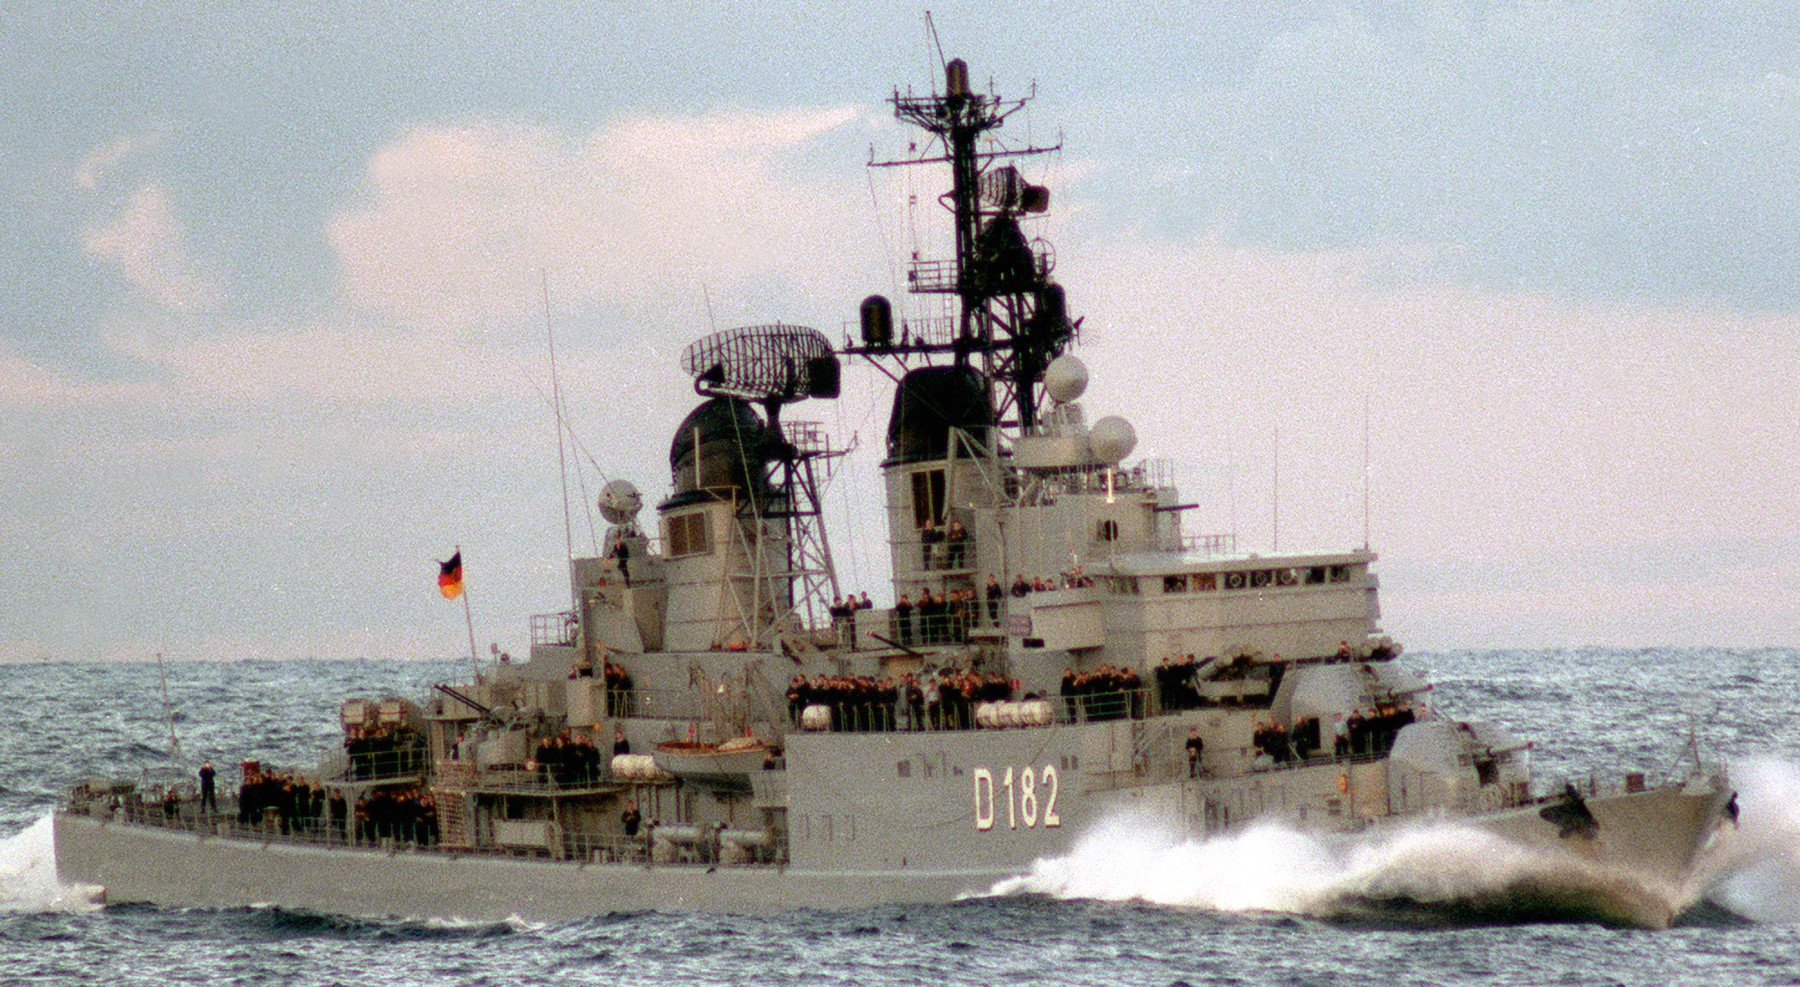 d-182 fgs schleswig-holstein type 101a hamburg class destroyer german navy 04